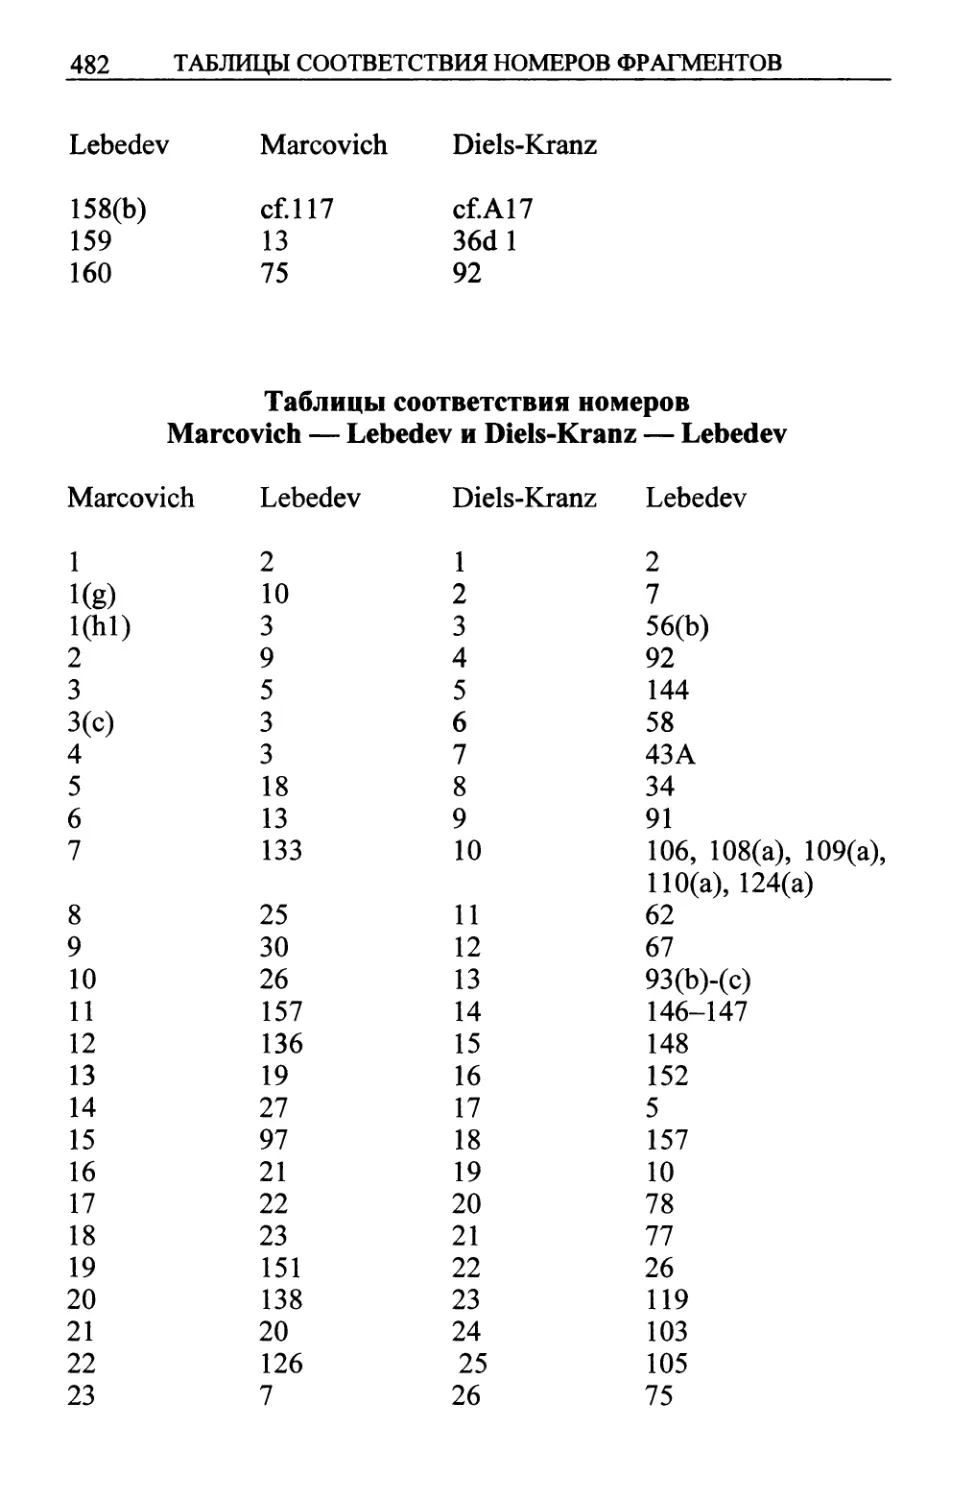 Marcovich — Lebedev; Diels-Kranz — Lebedev